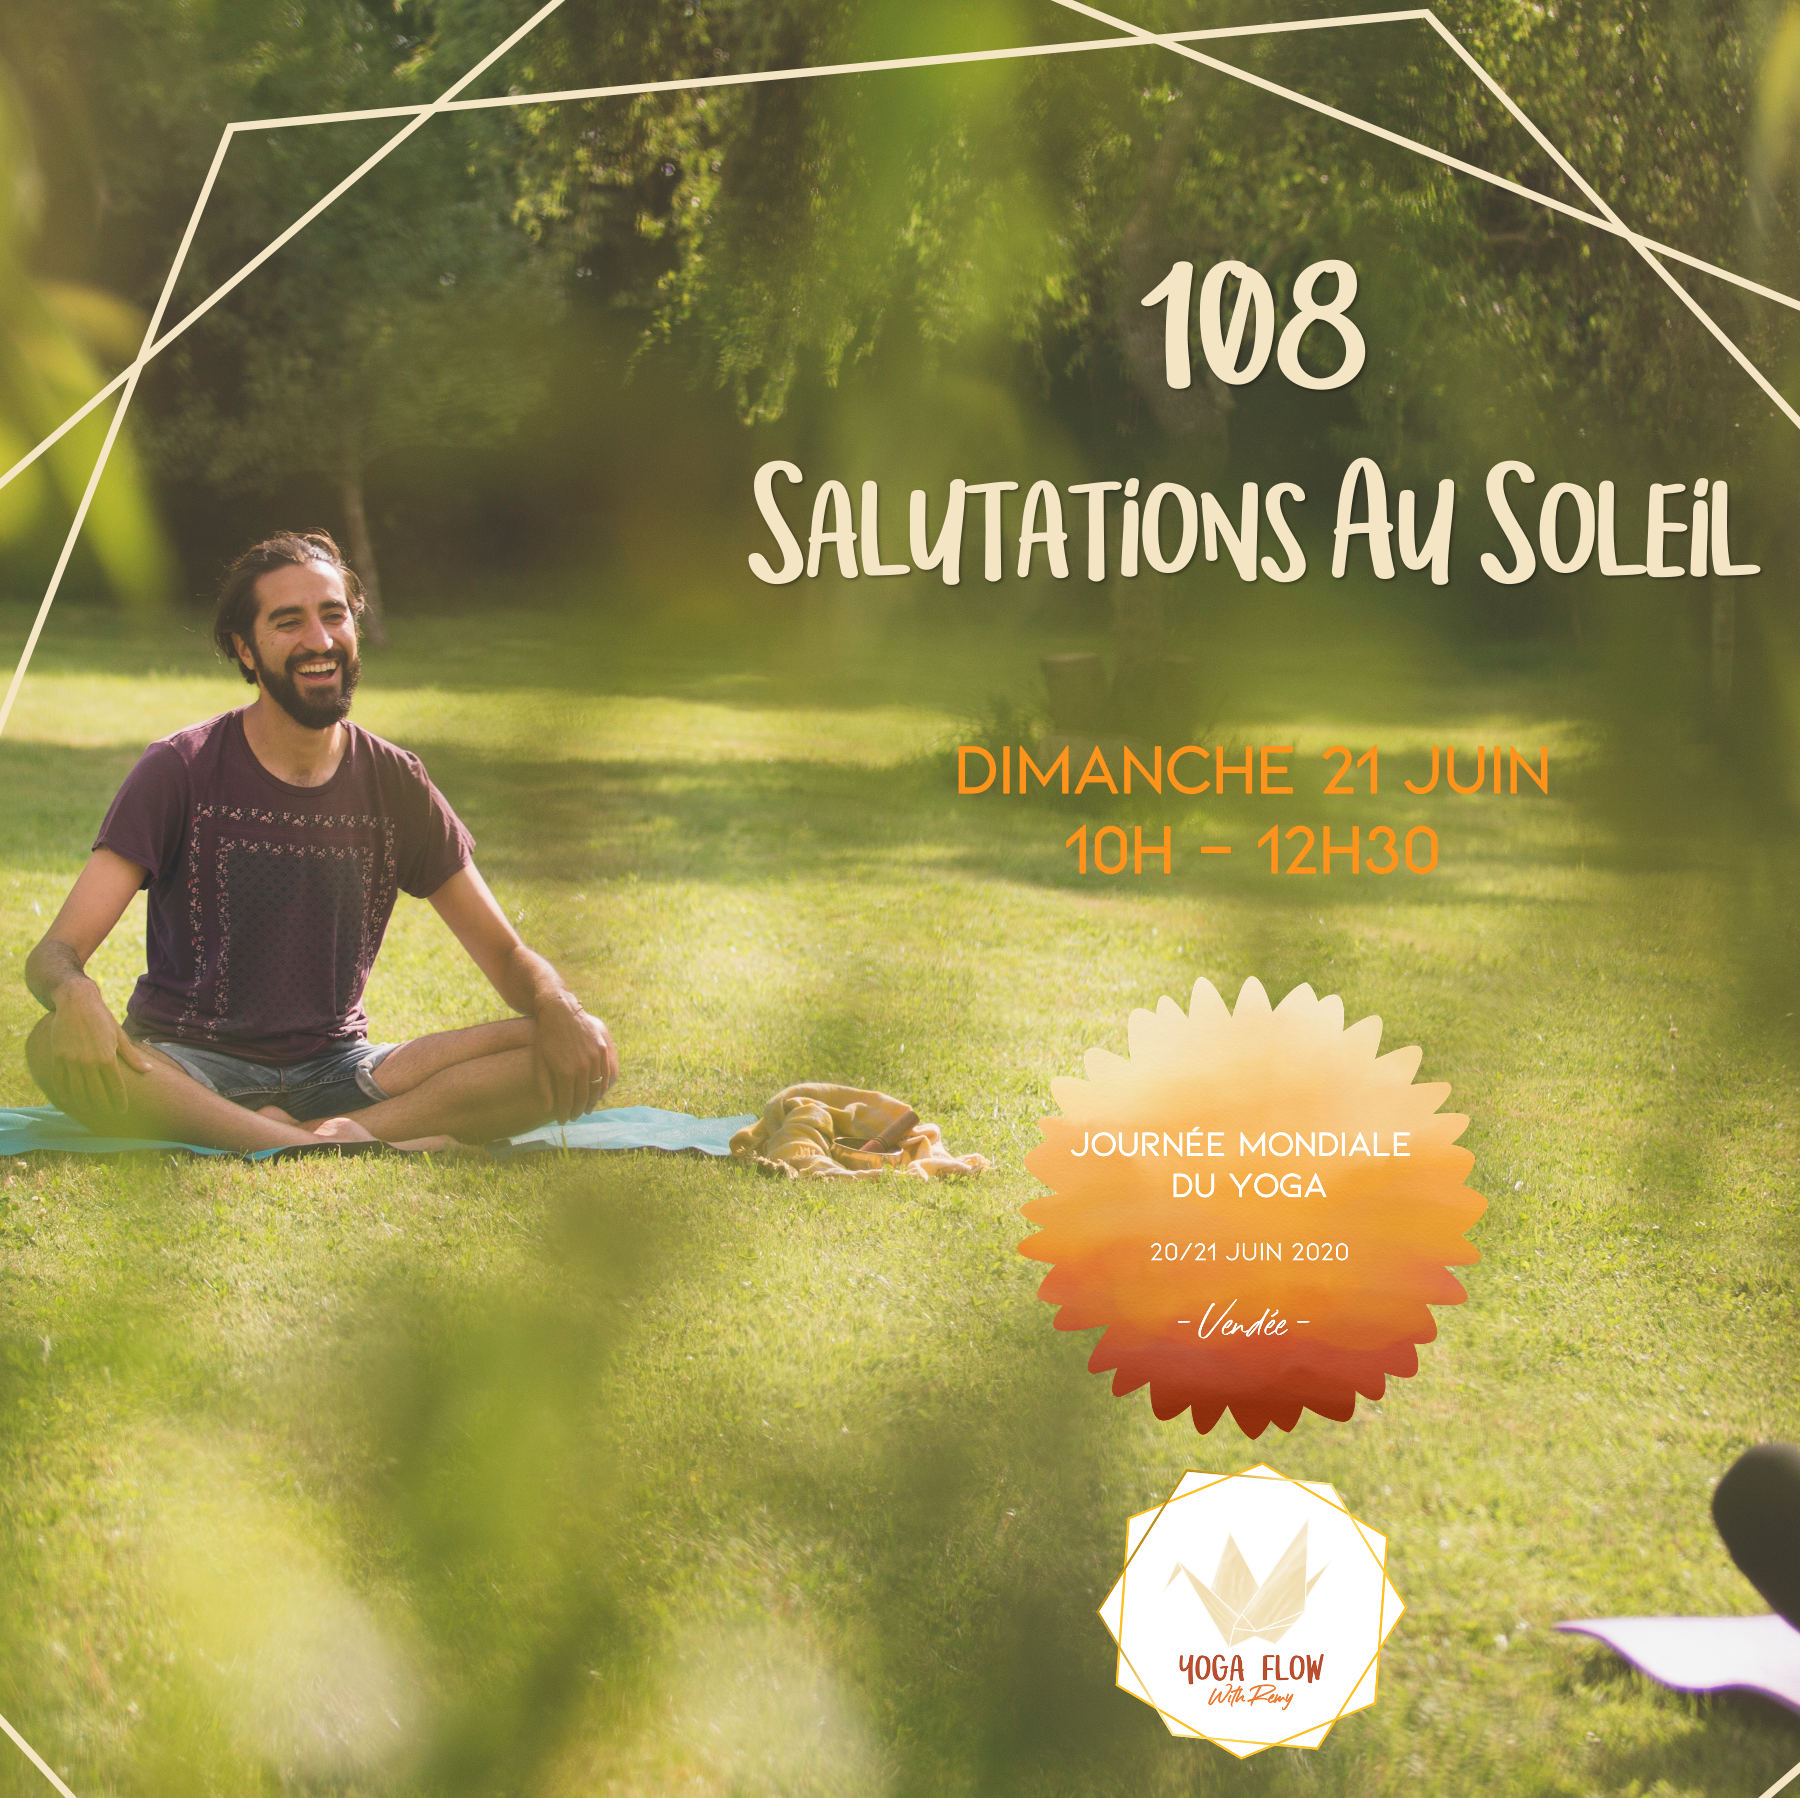 Journée mondiale du yoga 2020, Atelier 108 salutations au soleil par Yoga Flow with Rémy